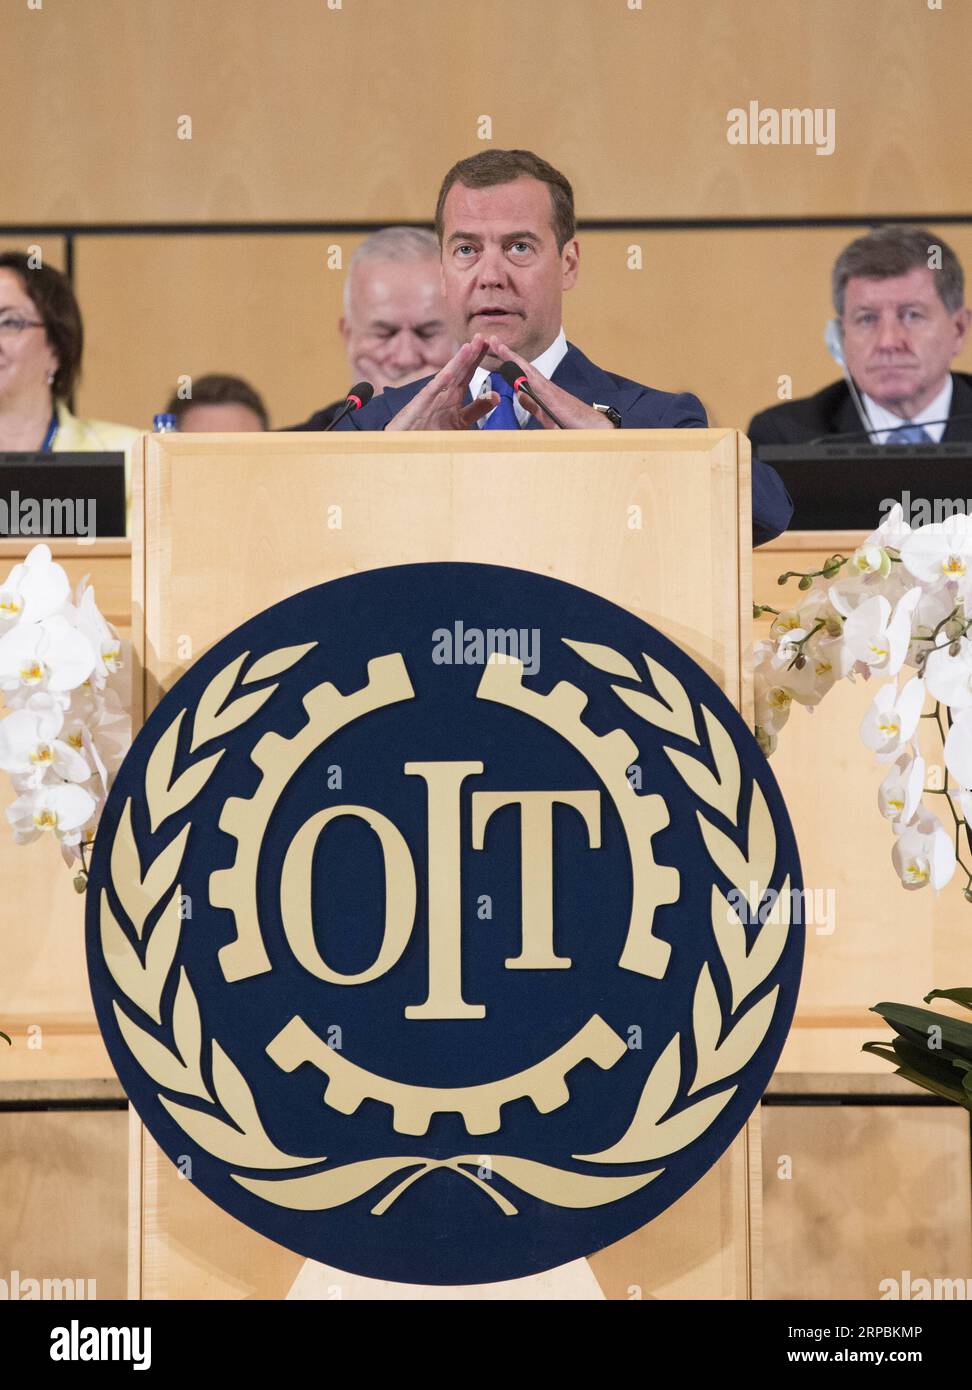 (190611) -- GENF, 11. Juni 2019 (Xinhua) -- der russische Premierminister Dmitri Medwedew hält eine Rede während der Internationalen Arbeitskonferenz der Internationalen Arbeitsorganisation (IAO) in Genf, Schweiz, 11. Juni 2019. Medwedew verurteilte am Dienstag illegitime Sanktionen, Protektionismus und Handelskriege, während er sich an die jährliche Internationale Arbeitskonferenz der IAO wandte, die vom 10. Bis 21. Juni stattfindet und den 100. Jahrestag der Organisation in Genf feiert. (Xinhua/Xu Jinquan) SCHWEIZ-GENF-ILO-HUNDERTJAHRSTAGUNG-MEDWEDEV PUBLICATIONxNOTxINxCHN Stockfoto